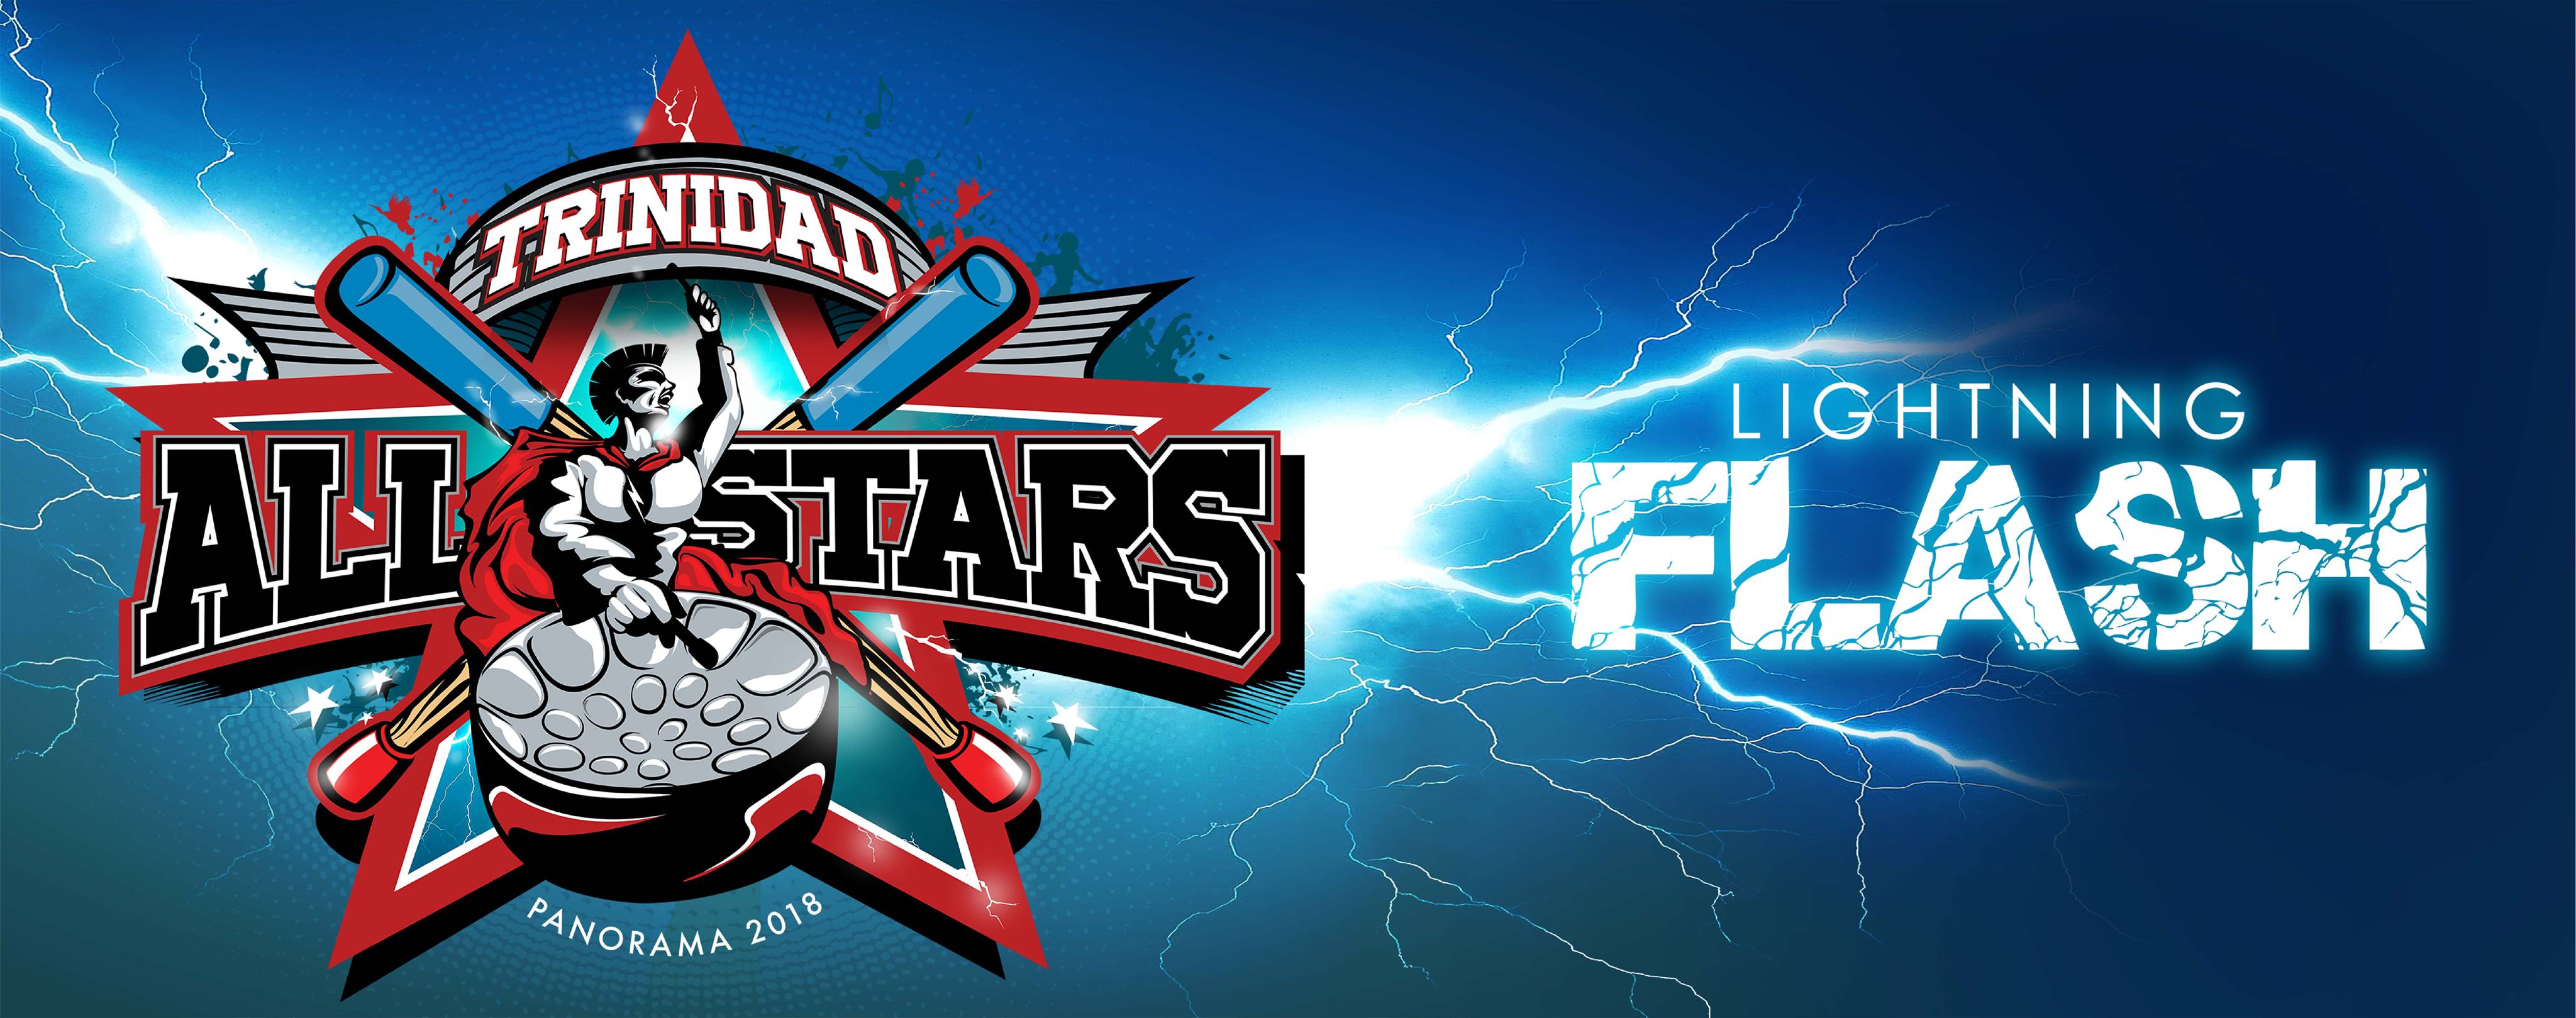 Trinidad All Stars - Lightning Flash